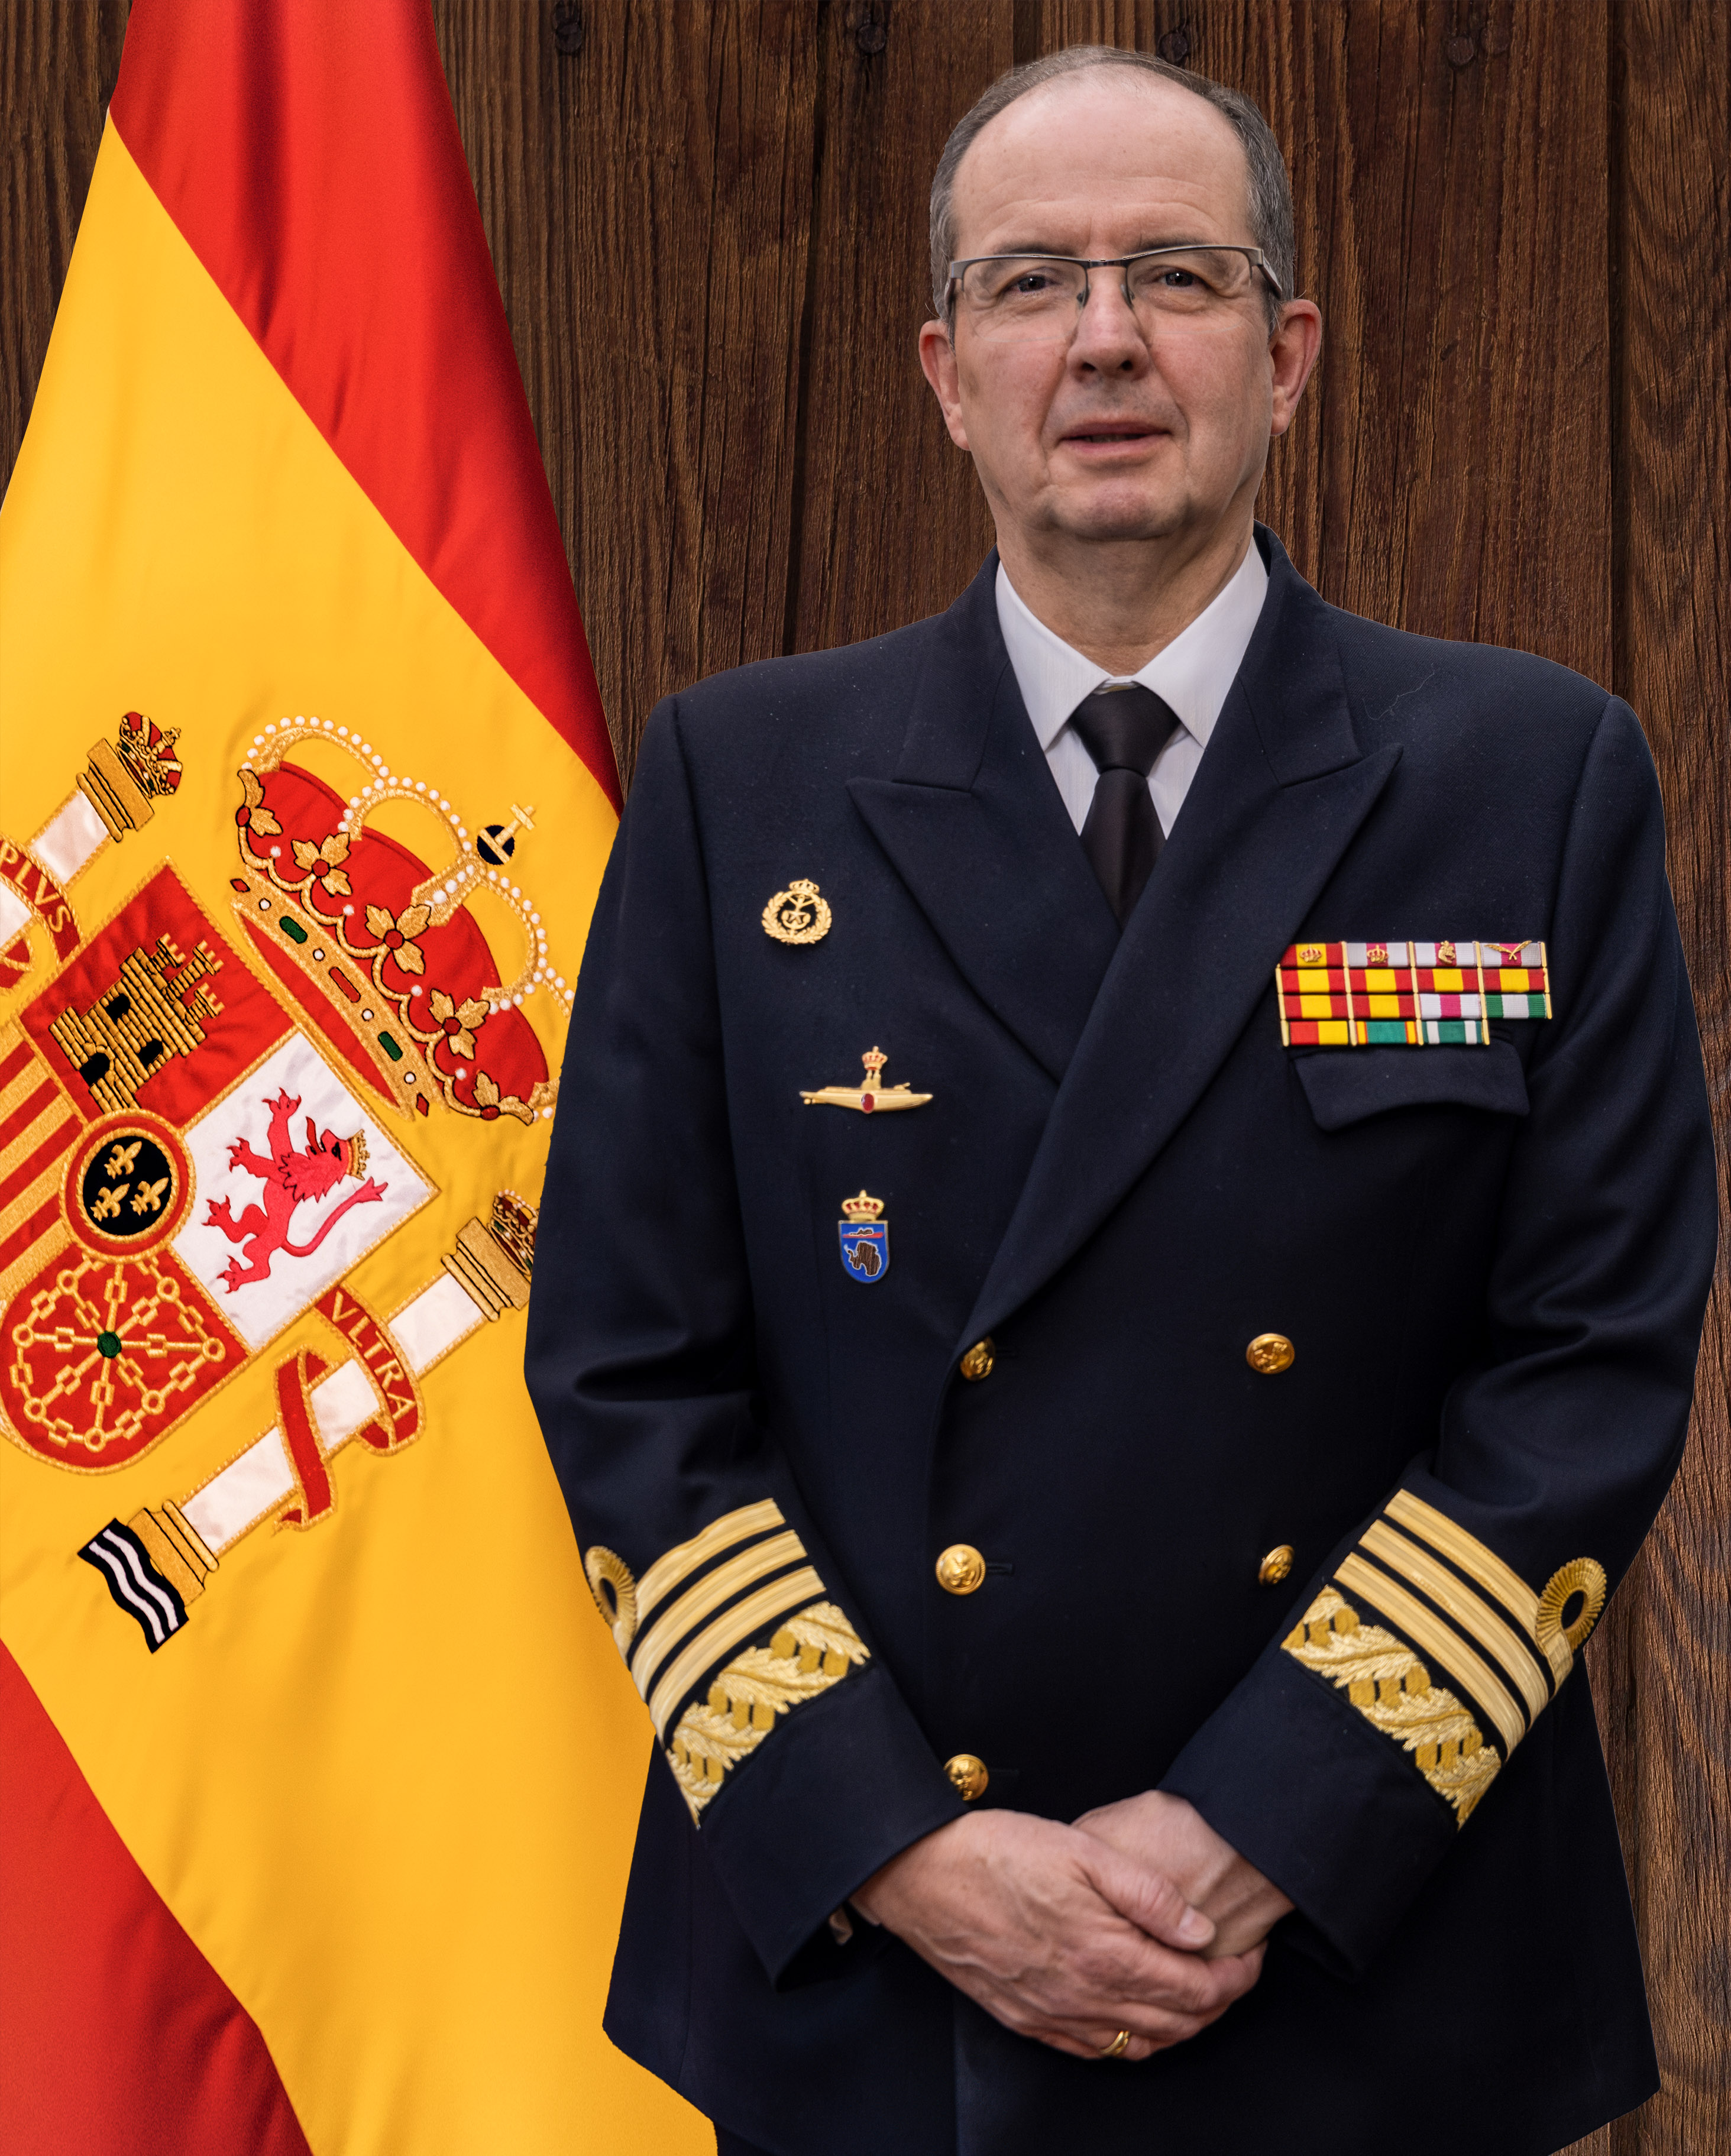 Almirante D.Pedro Luis de la Puente García-Ganges